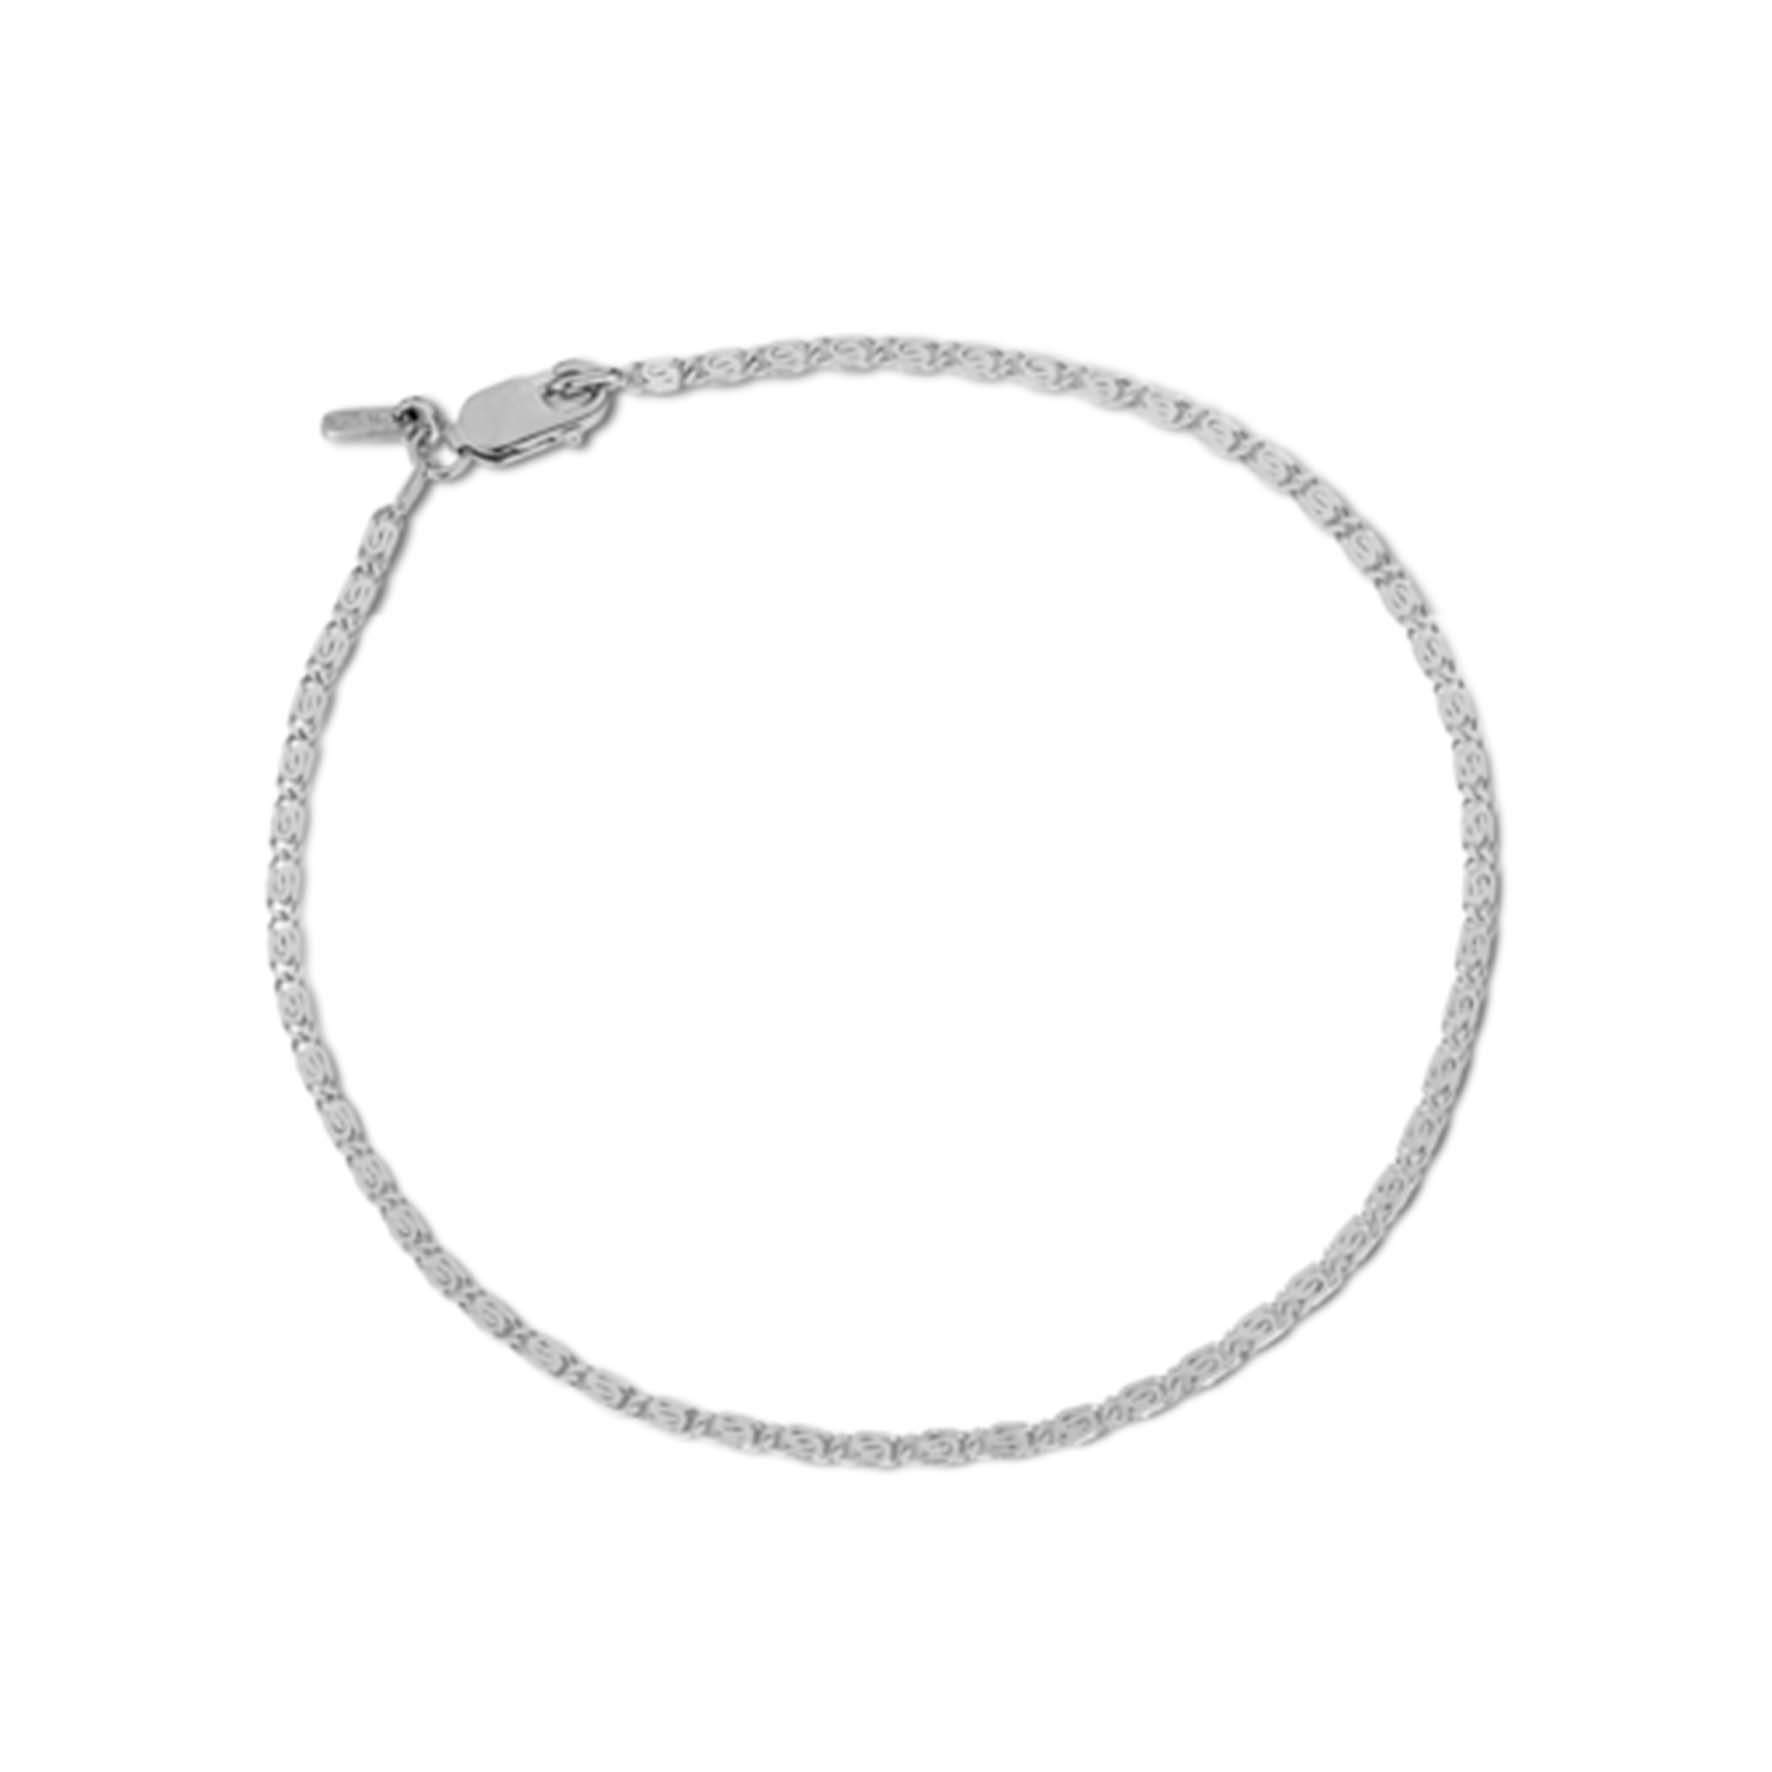 Envision Chain Bracelet von Jane Kønig in Silber Sterling 925